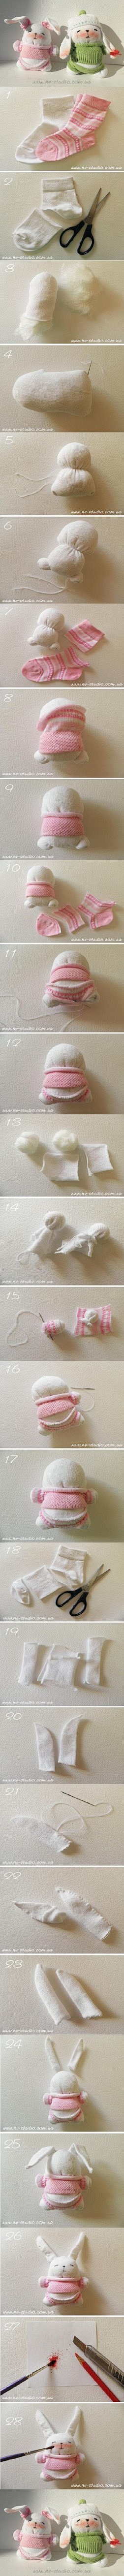 袜子做的兔子玩偶，好可爱~